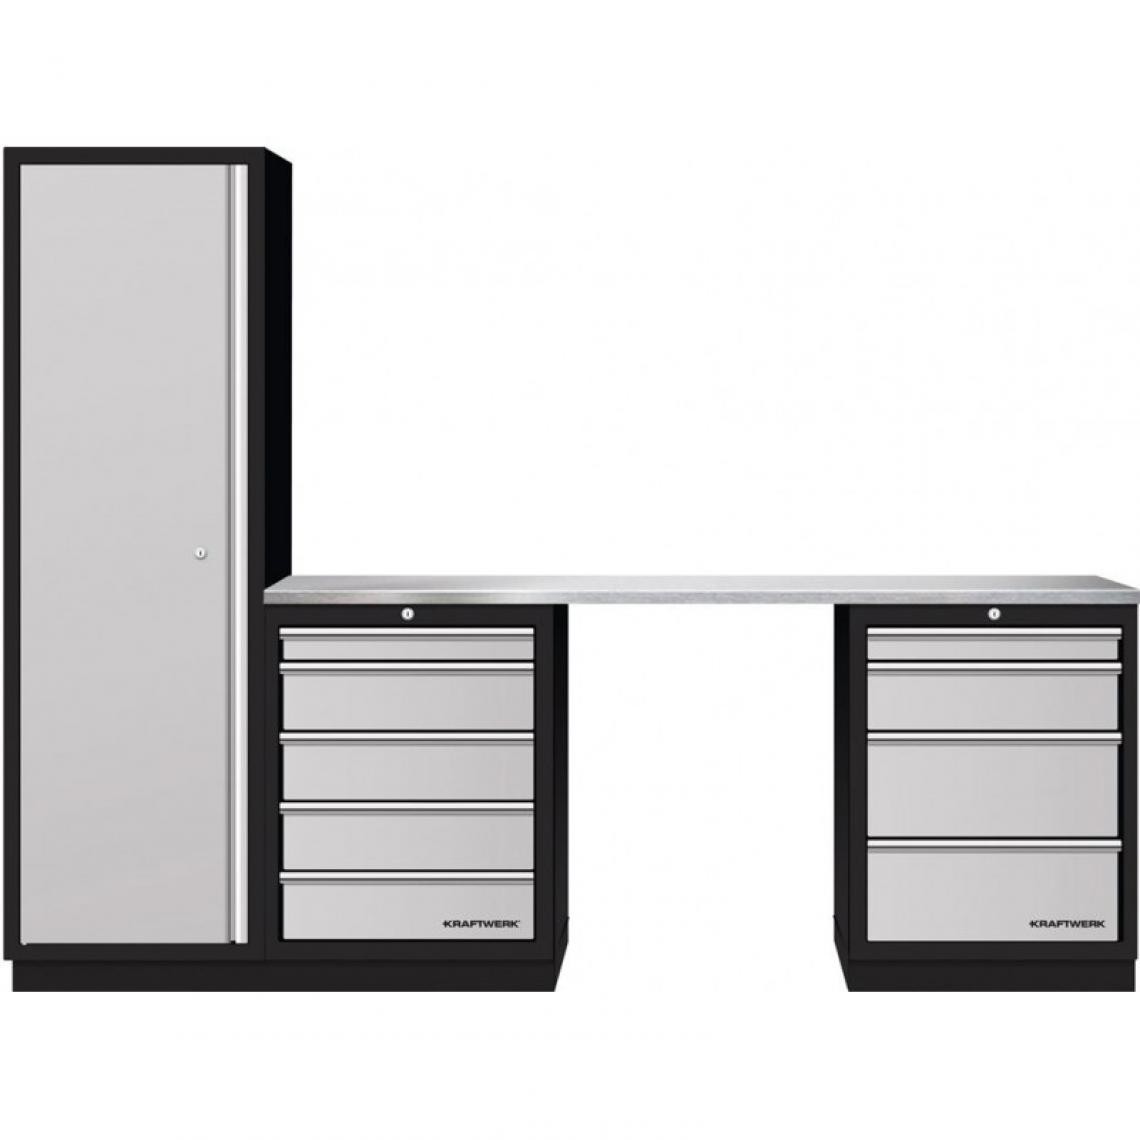 Kraftwerk - Meuble en combinaison 3 pcs avec armoire haute en acier inoxydable Kraftwerk - Boîtes à outils